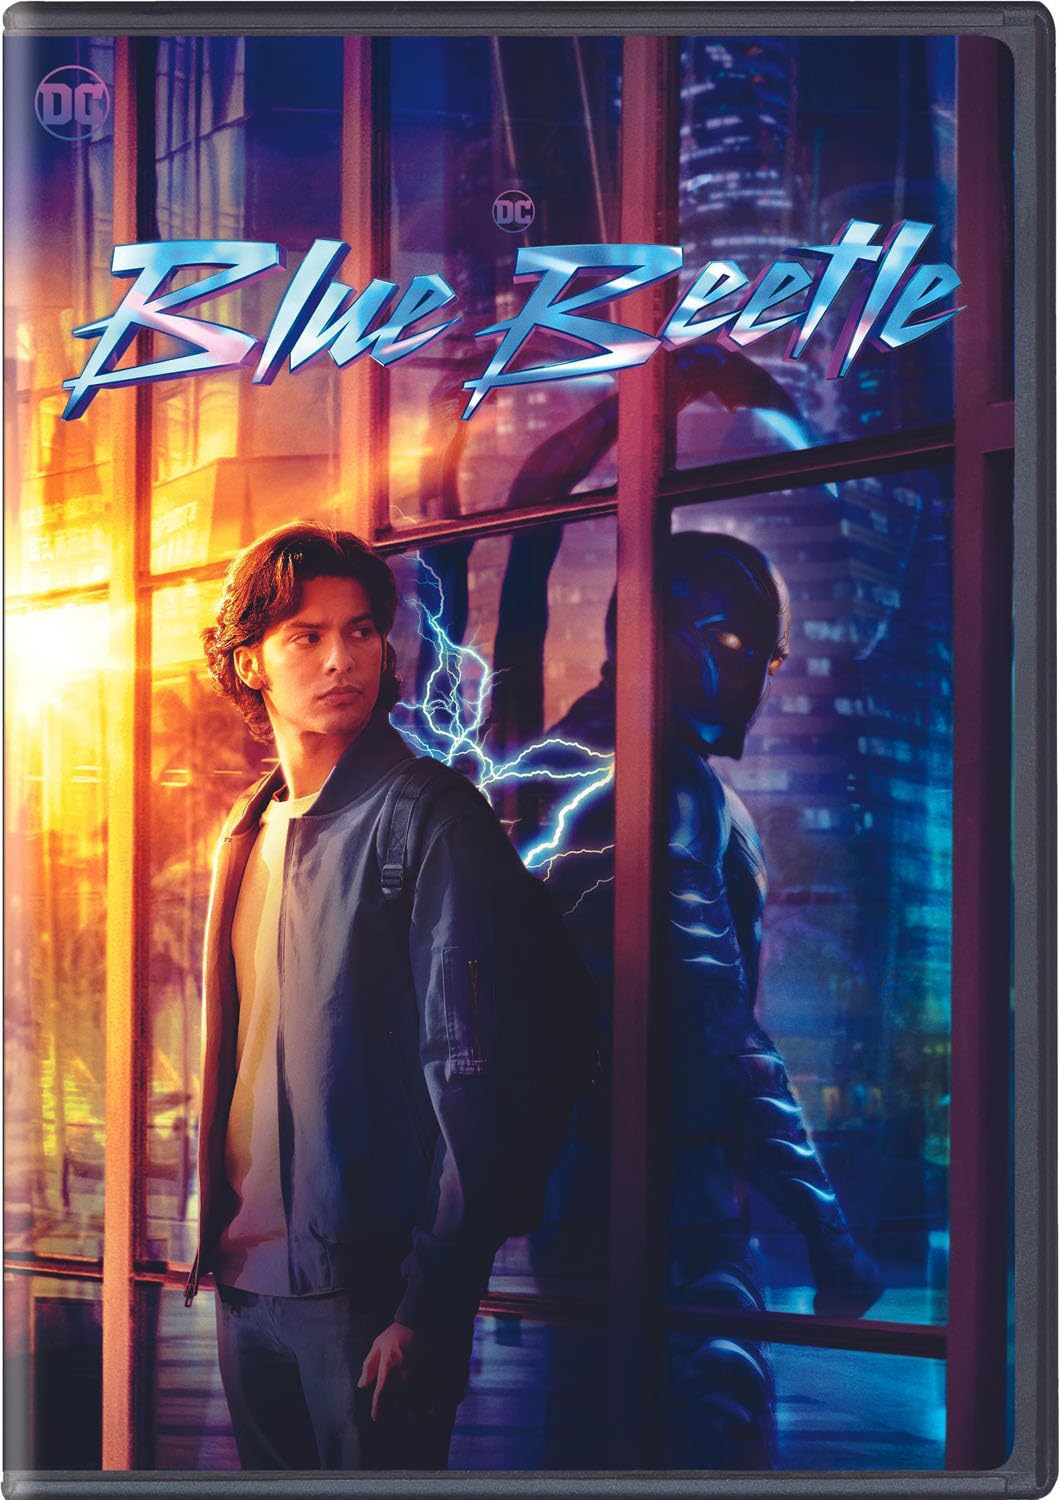 Blue Beetle 4K UHD, Blu-ray & DVD Release Date Revealed